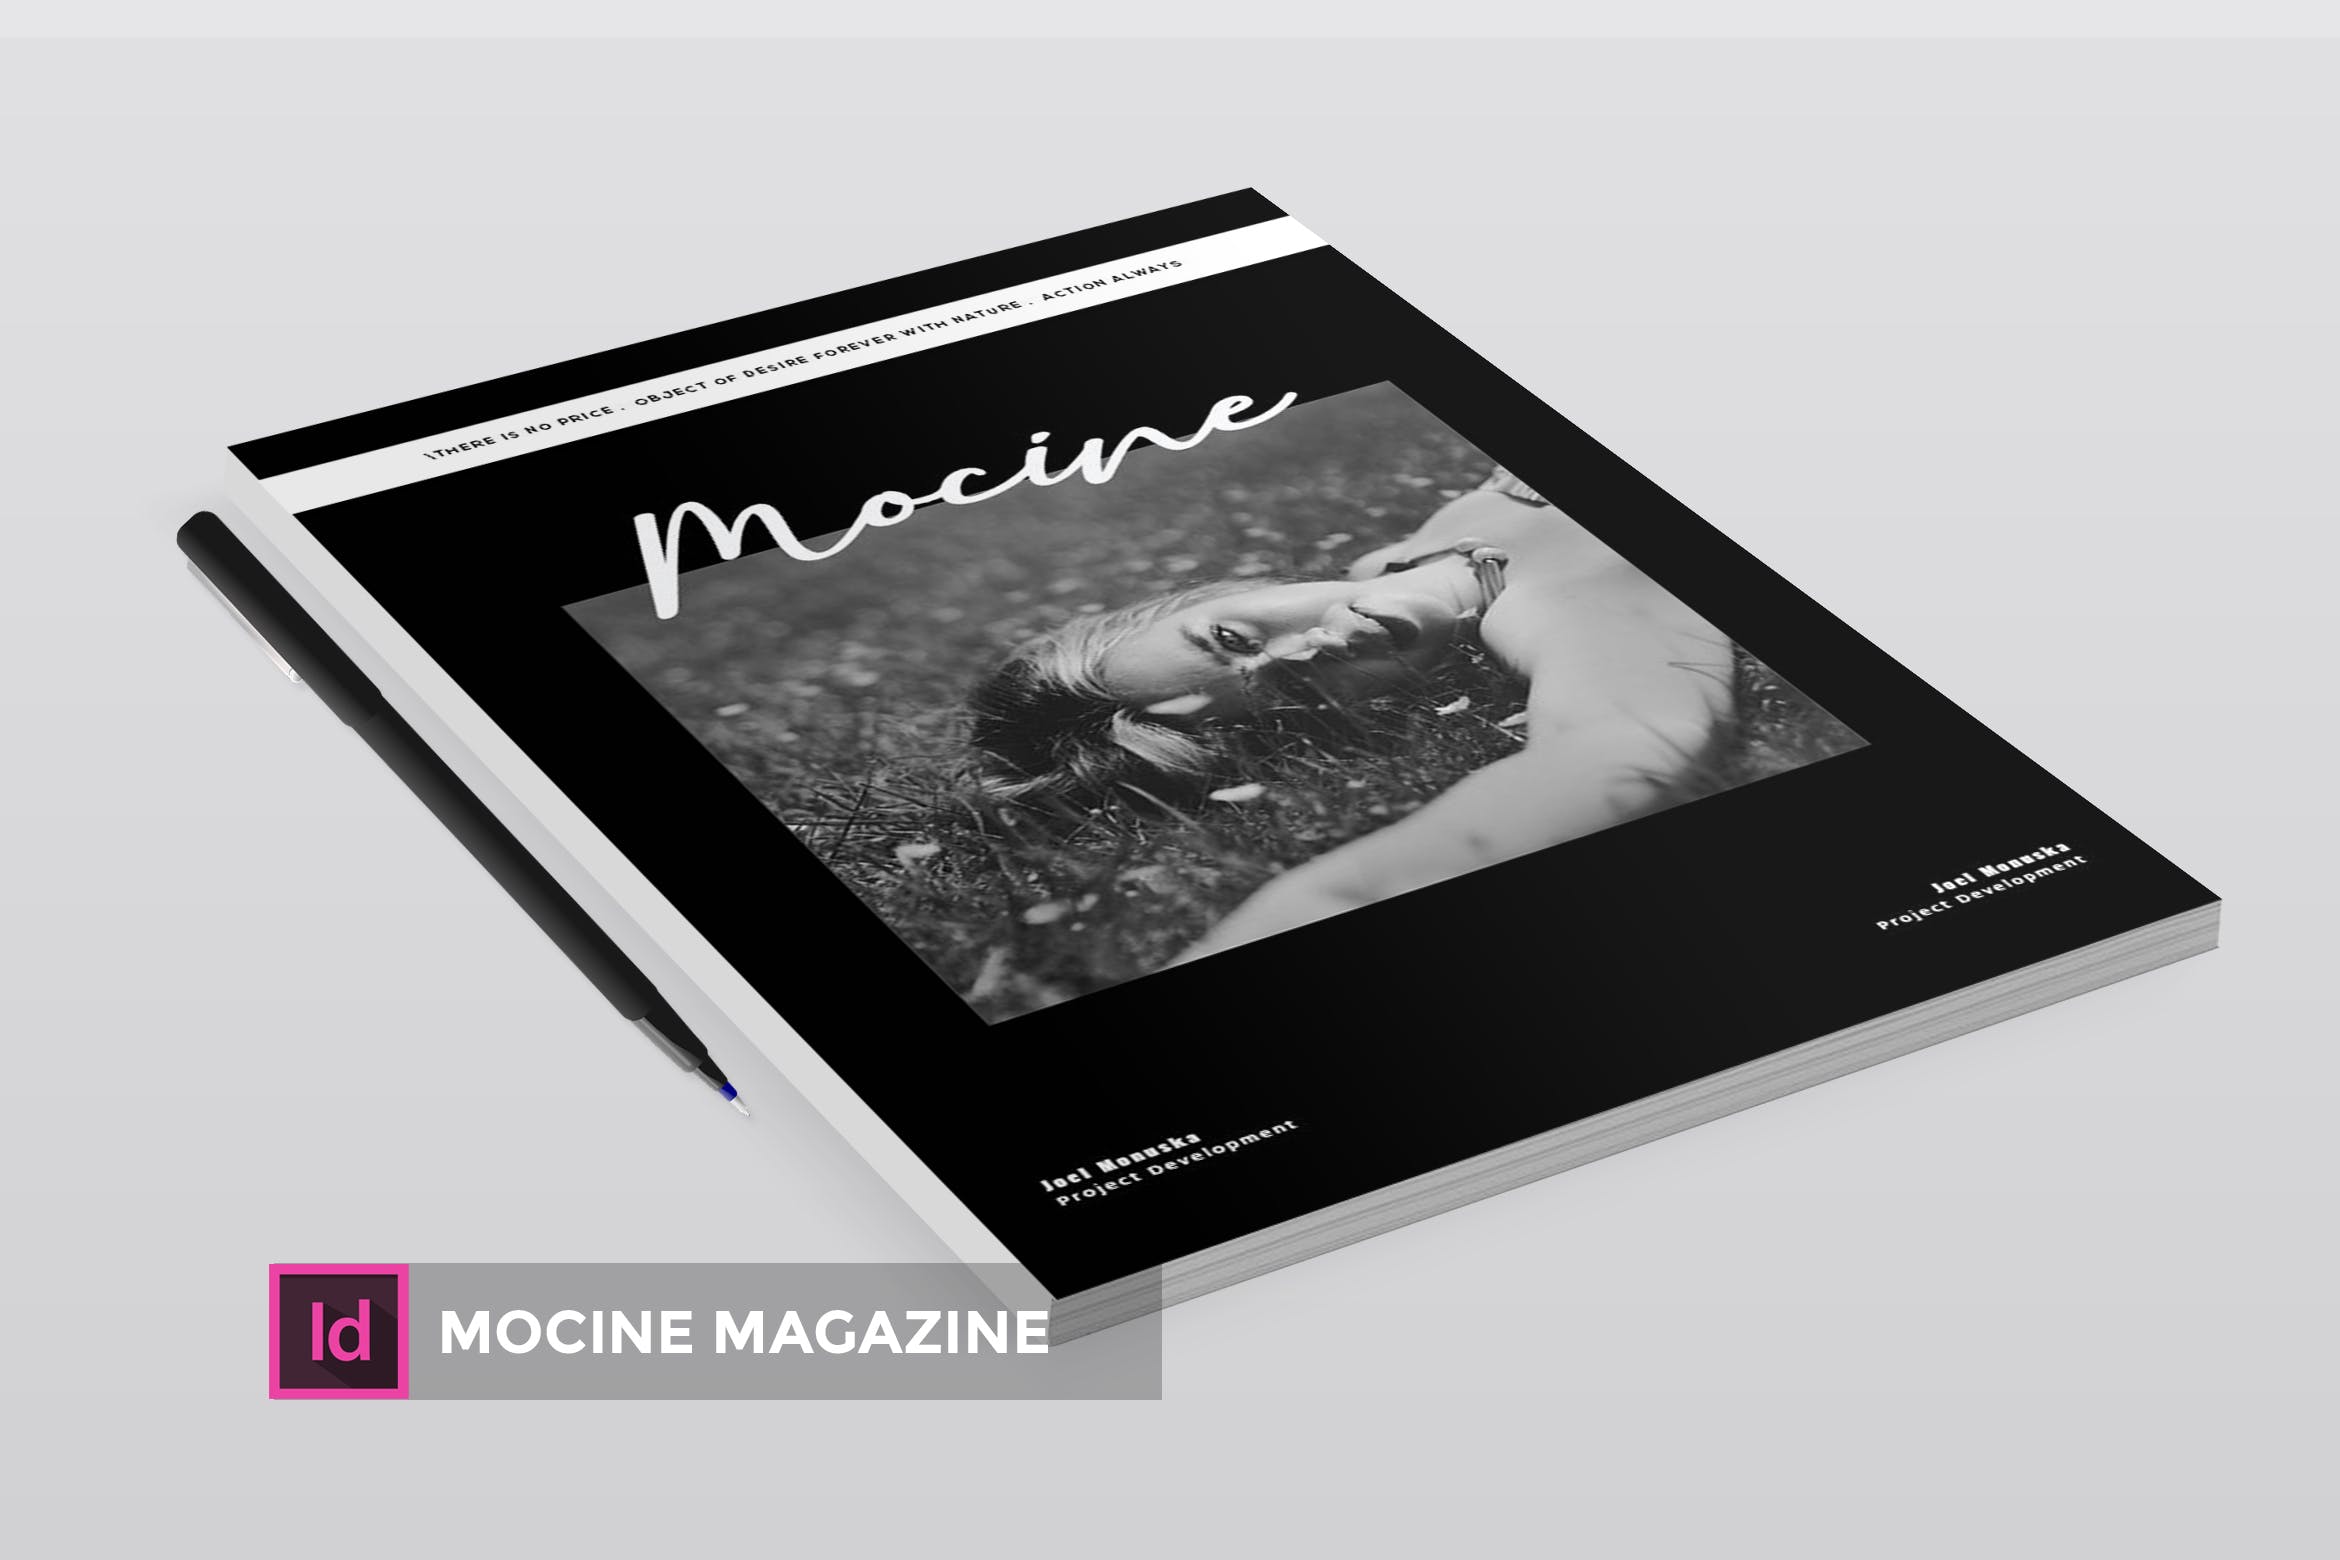 高端人物/摄影/时尚主题非凡图库精选杂志版式排版设计INDD模板 Mocine | Magazine Template插图